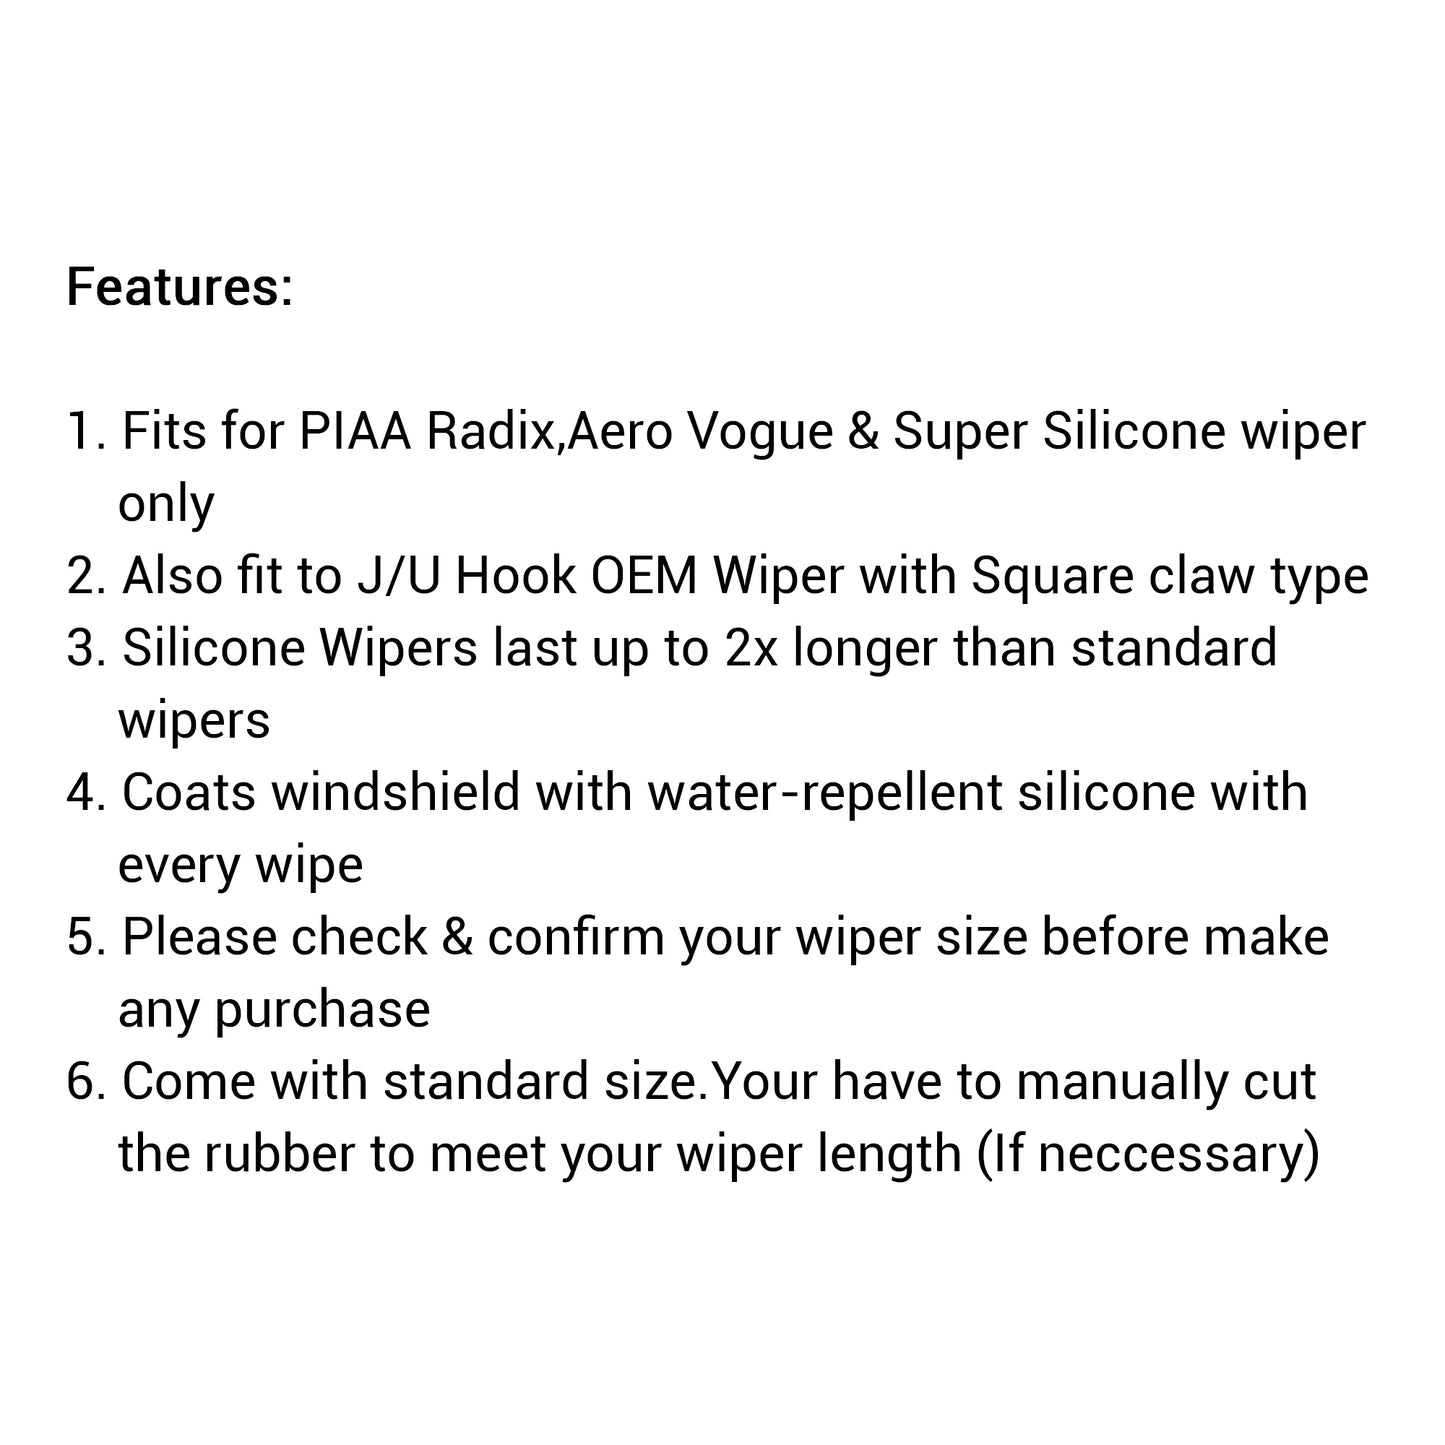 PIAA Silicone Wiper Refill for Uniblade ( 28" ) ( 28"- 8.6mm ) (Barcode: 4960311379904 )